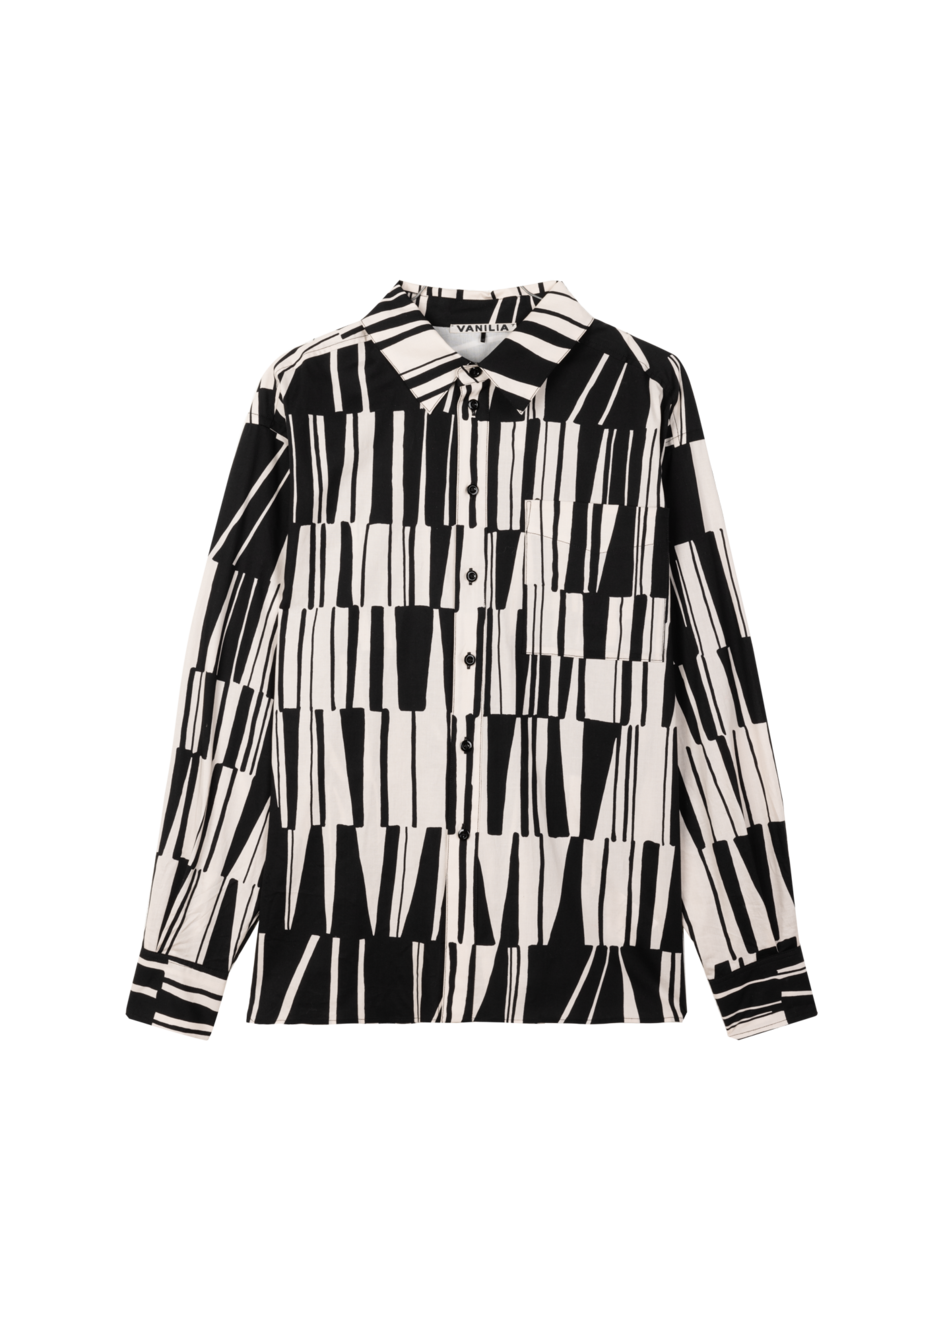 Aanbieding van Wide print blouse voor 149,95€ bij Vanilia